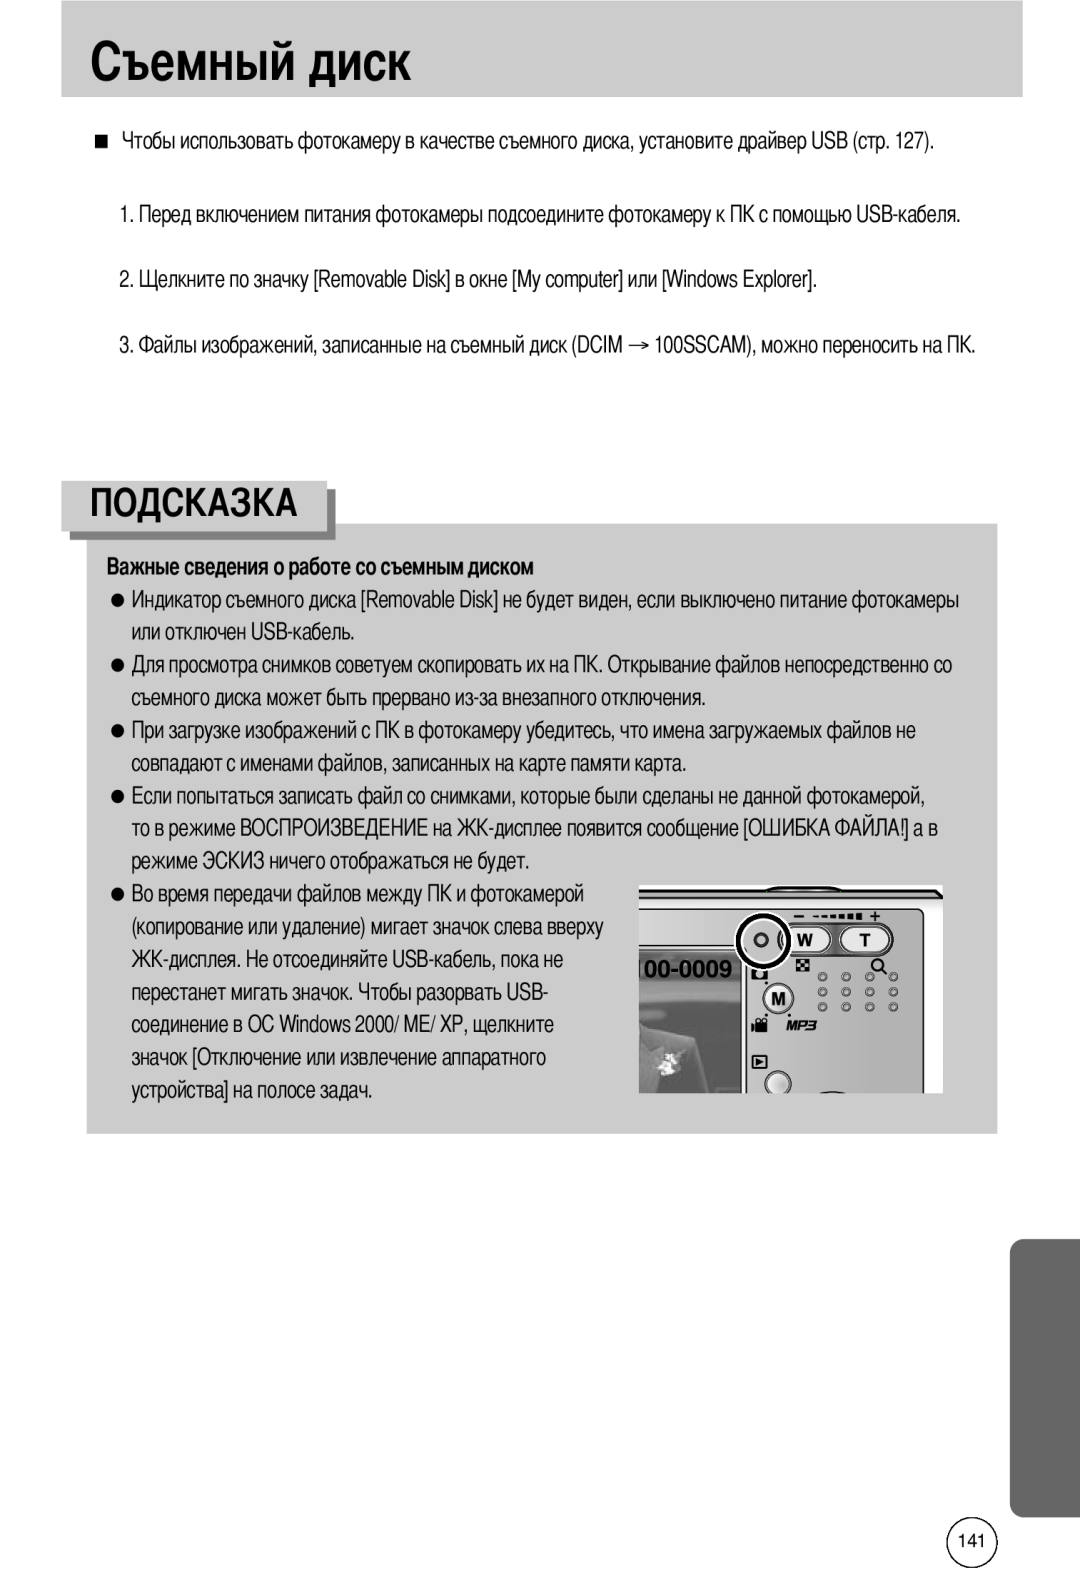 Samsung EC-I50ZZRBA/FR manual или отключен USB-кабель, съемного диска может быть прервано из-за внезапного отключения 